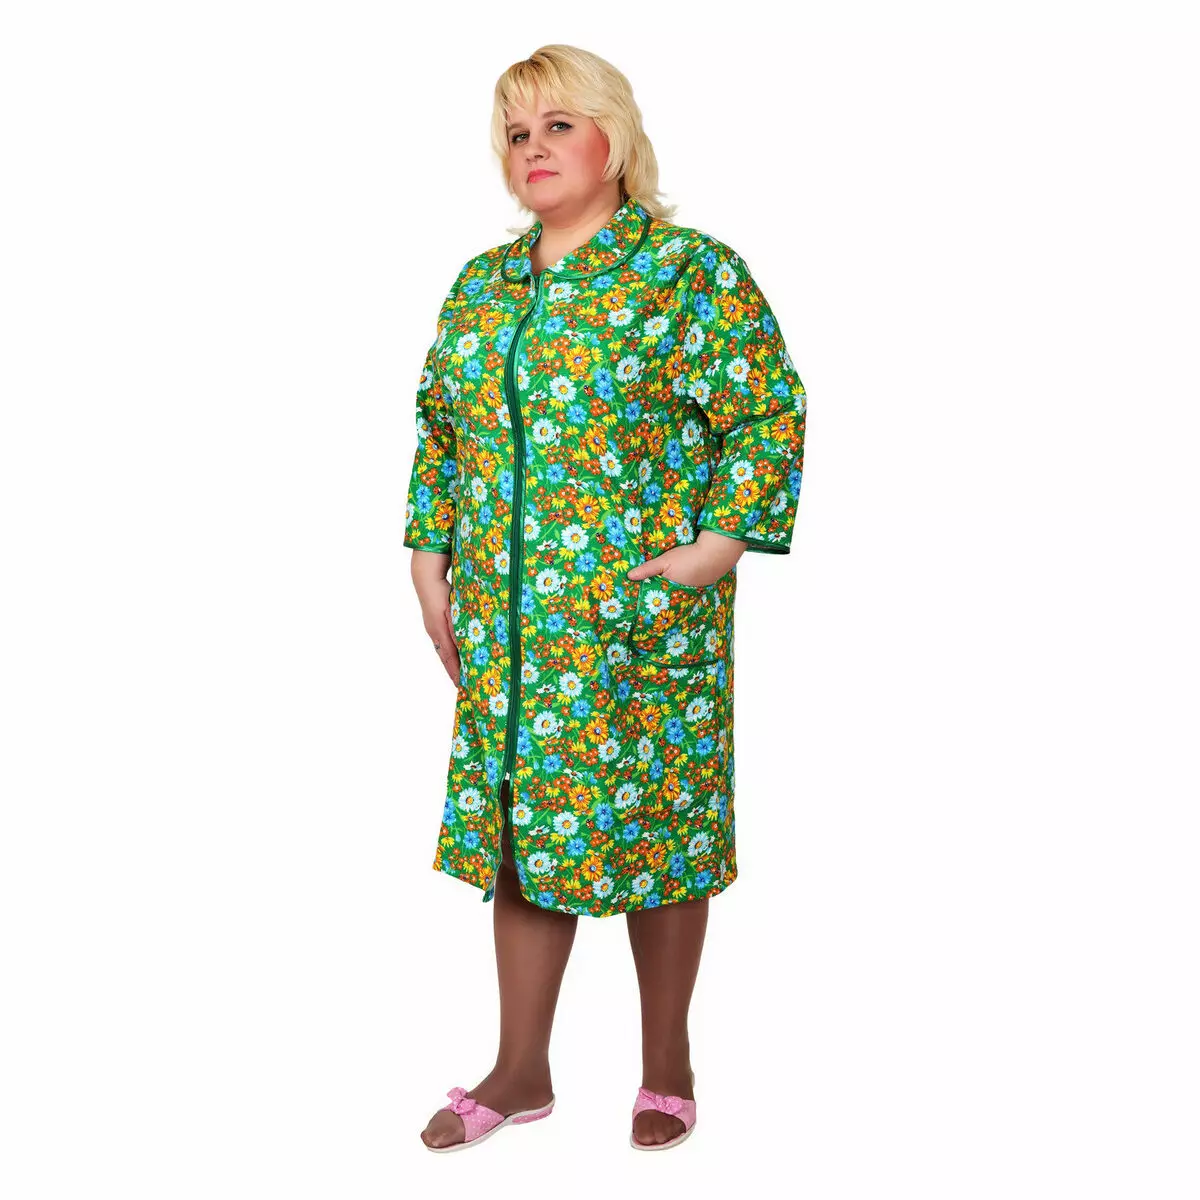 Flannelk Robe 45 Billeder: Kvinders badekåber fra Flannels med lugt, på knapper, store størrelser 1633_35